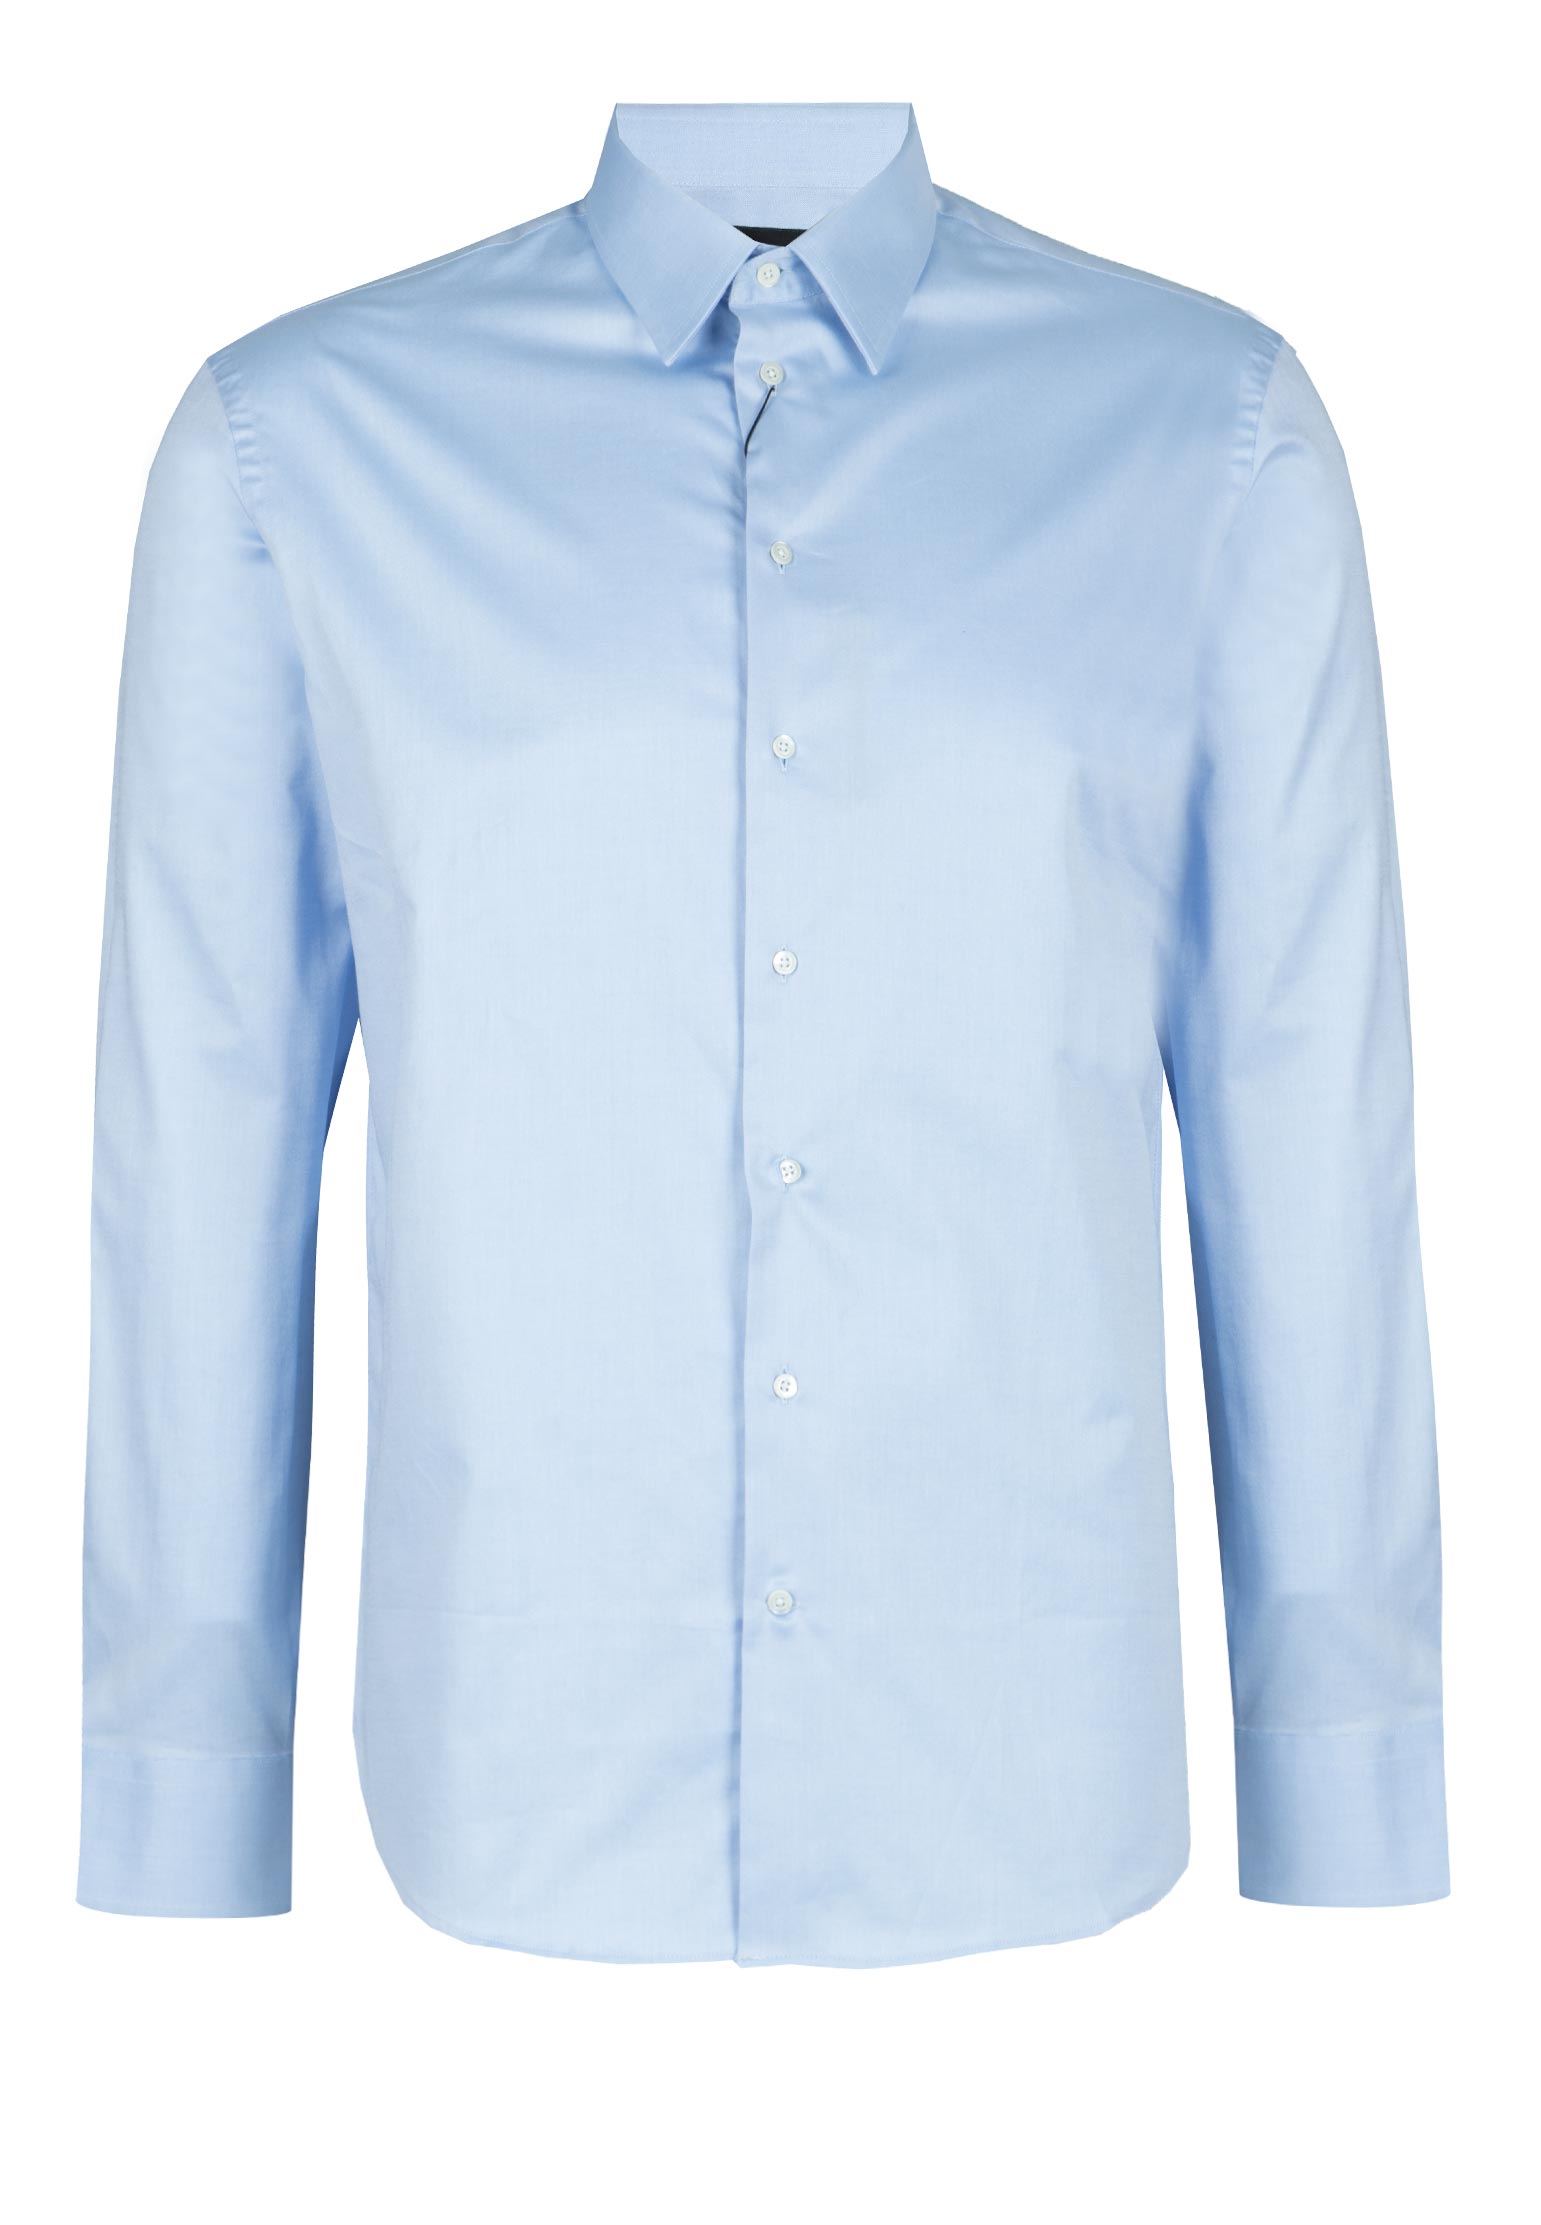 Рубашка мужская Emporio Armani 106406 синяя 40